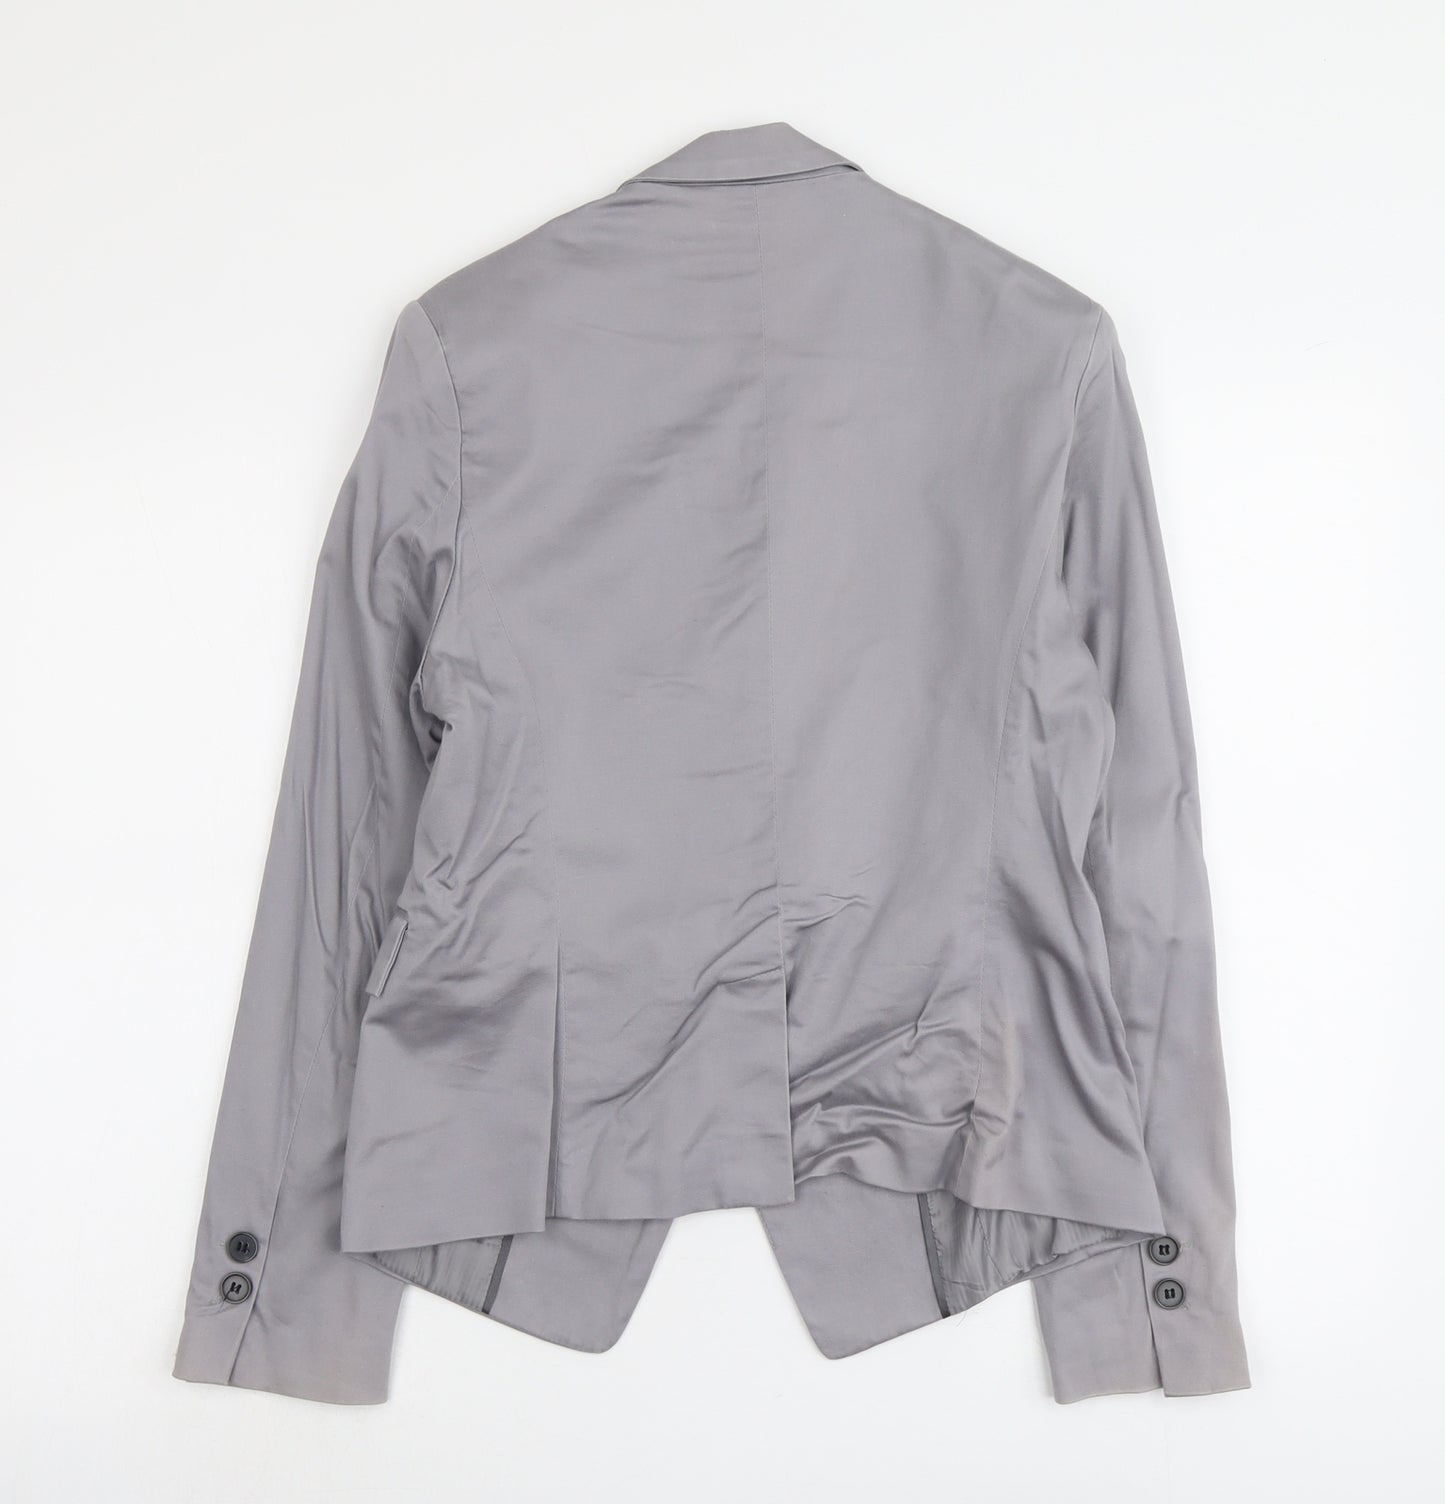 New Look Womens Grey Cotton Jacket Blazer Size 16